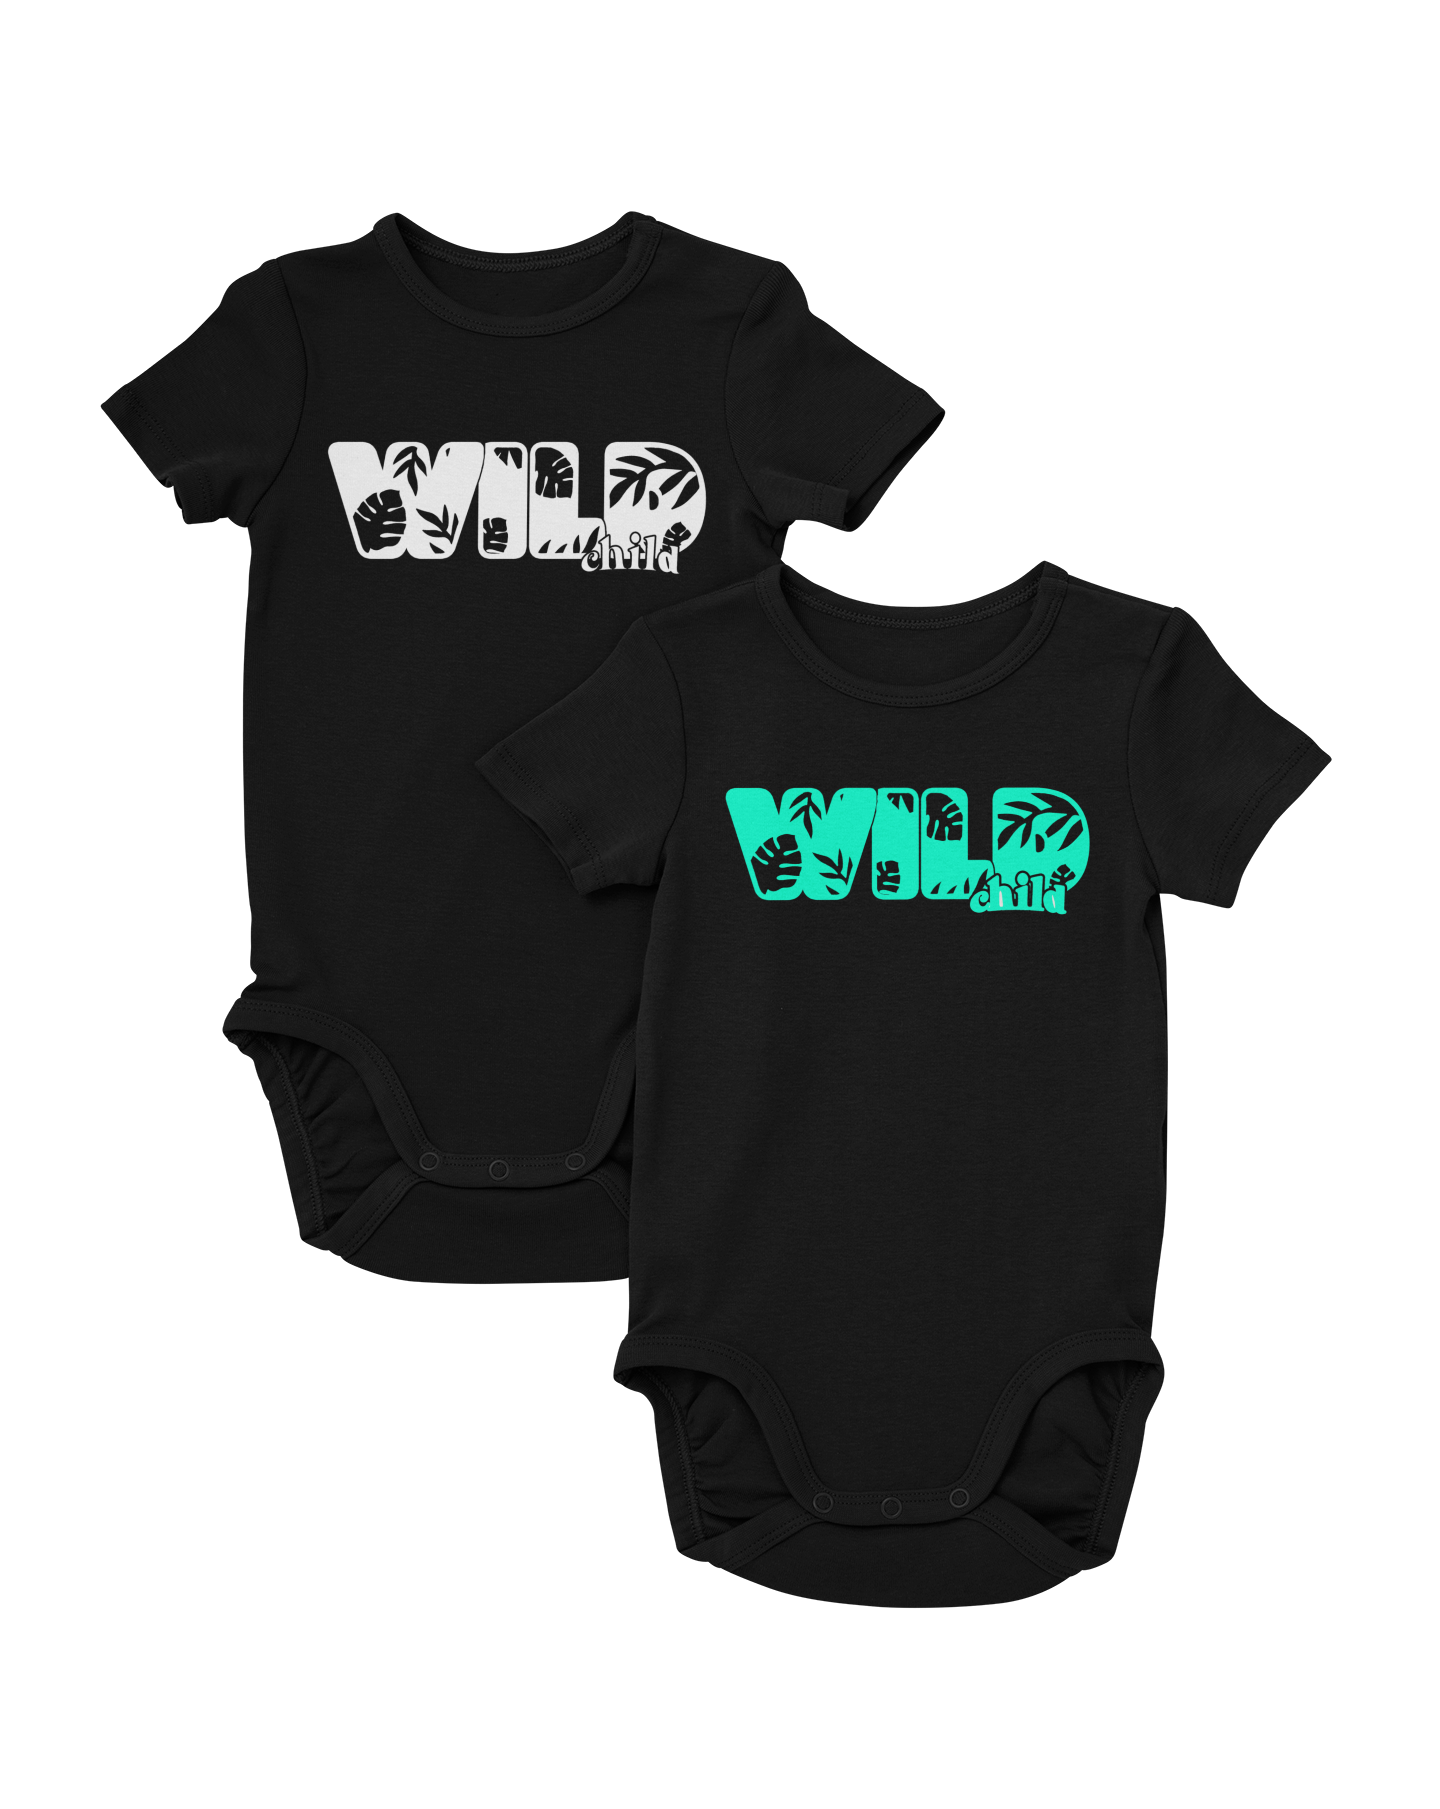 "WILD CHILD" Design